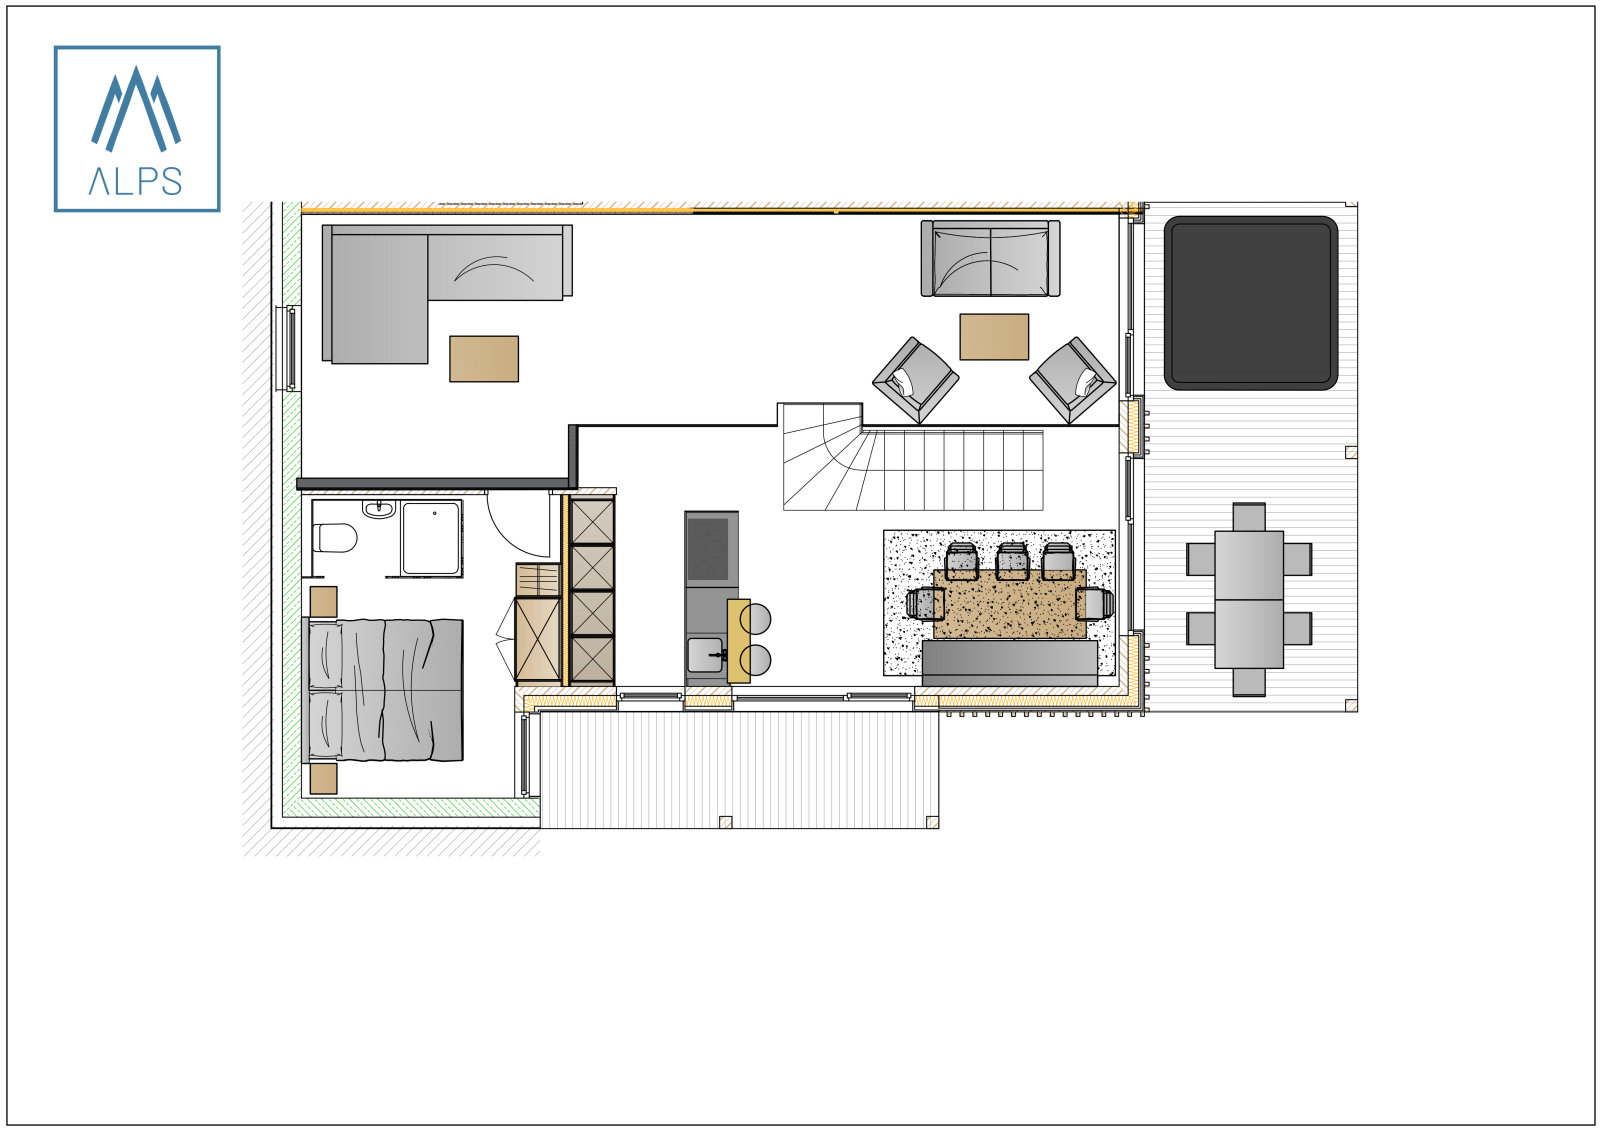 Planai superior apartman - 120 m2 / 6 fős - emeleti alaprajz 